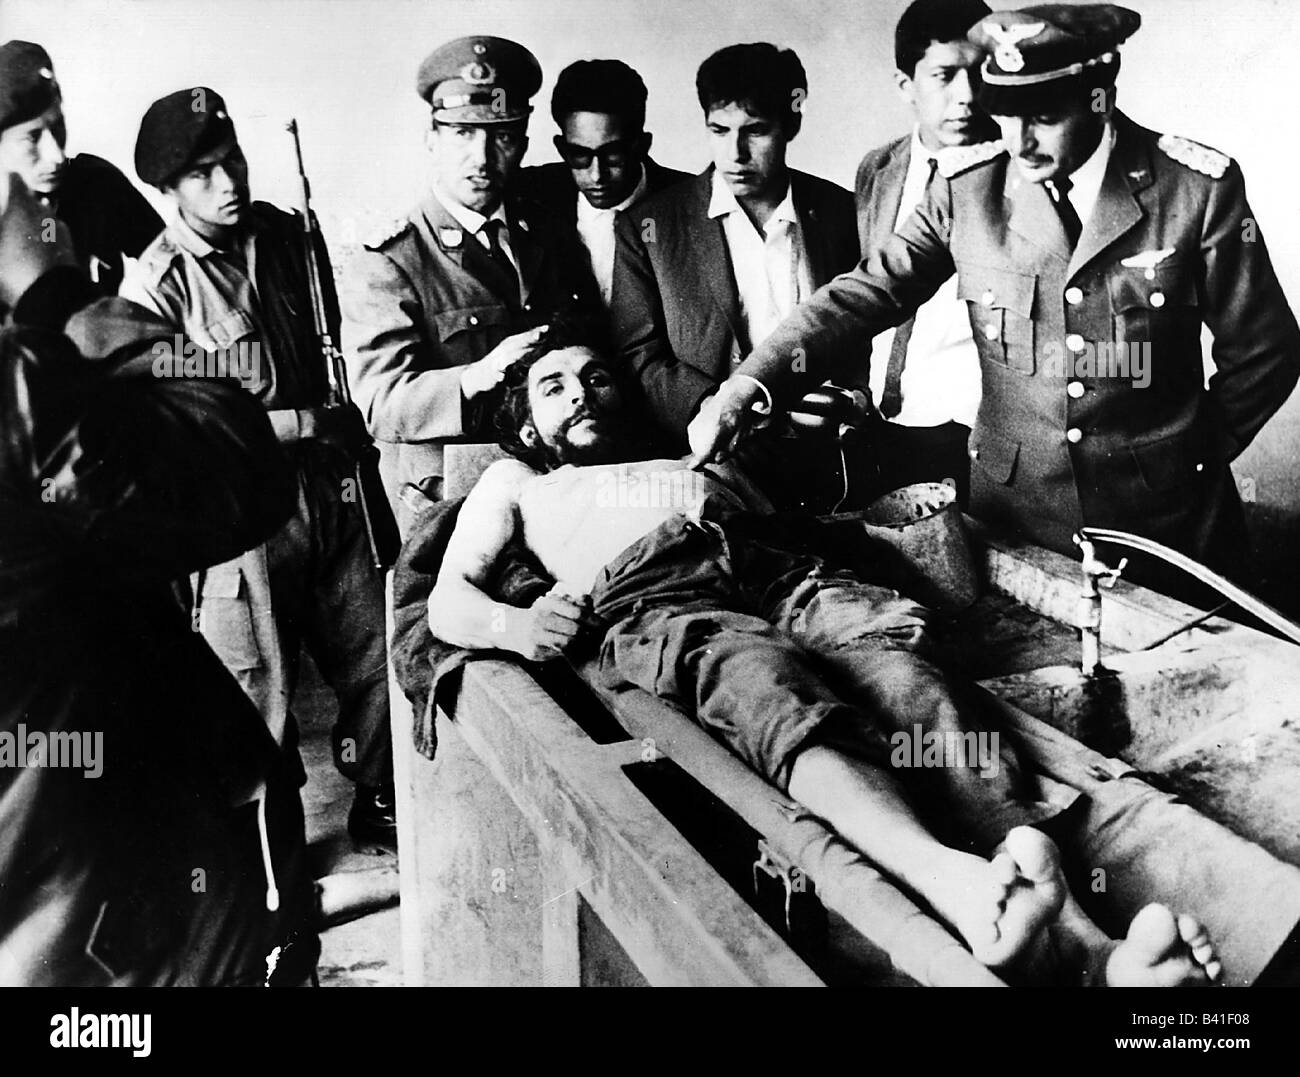 guevara-serna-ernesto-che-14-5-1928-9-10-1967-revolucionario-argentino-su-cuerpo-muerto-hospital-bolivia-12-10-1967-b41f08.jpg